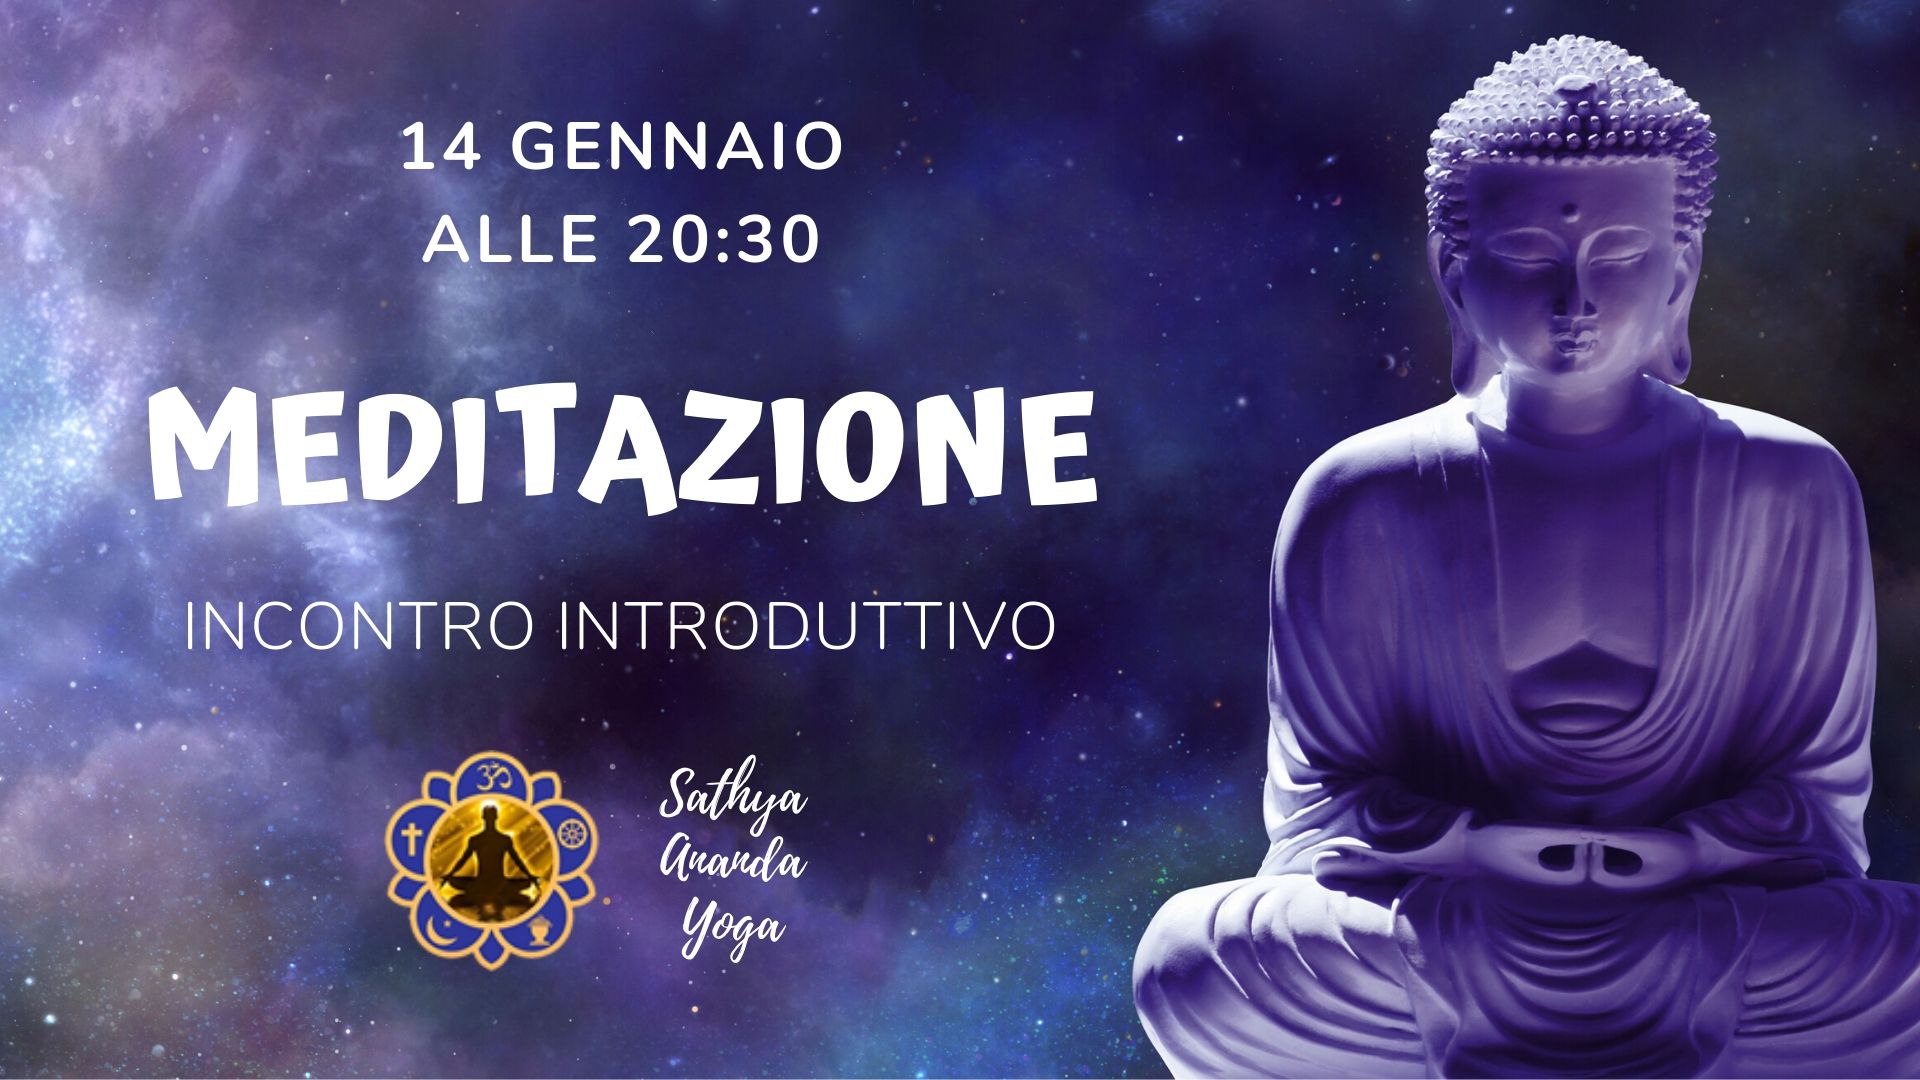 MEDITAZIONE - Incontro introduttivo al corso di meditazione 2020